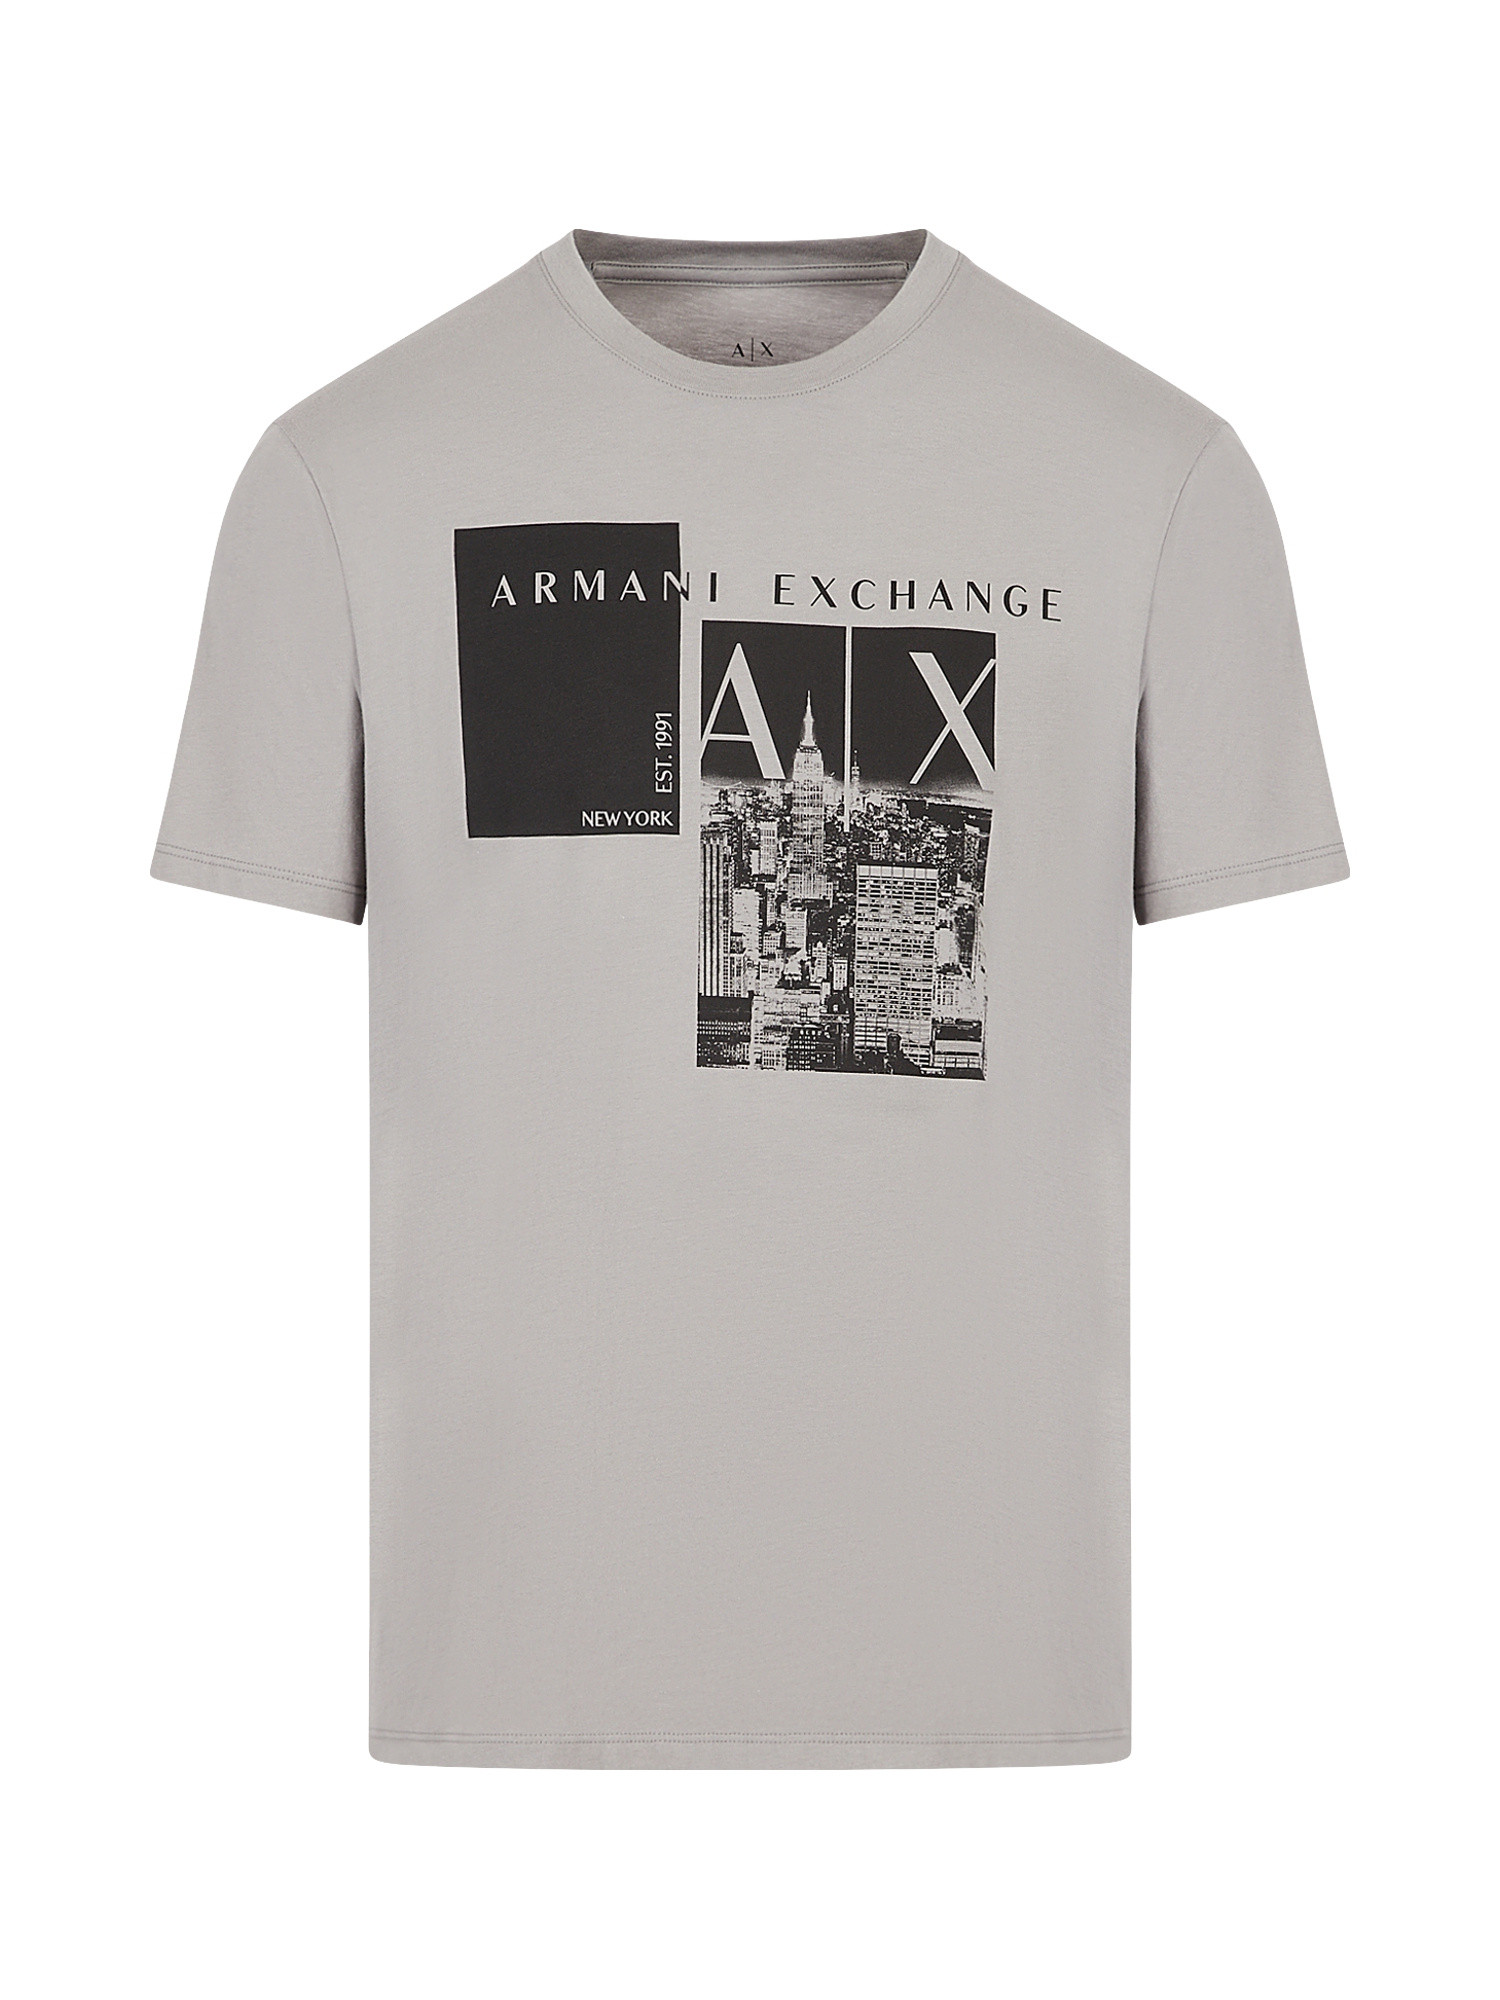 Armani Exchange - Regular fit graphic print T-shirt, Dark Grey, large image number 0